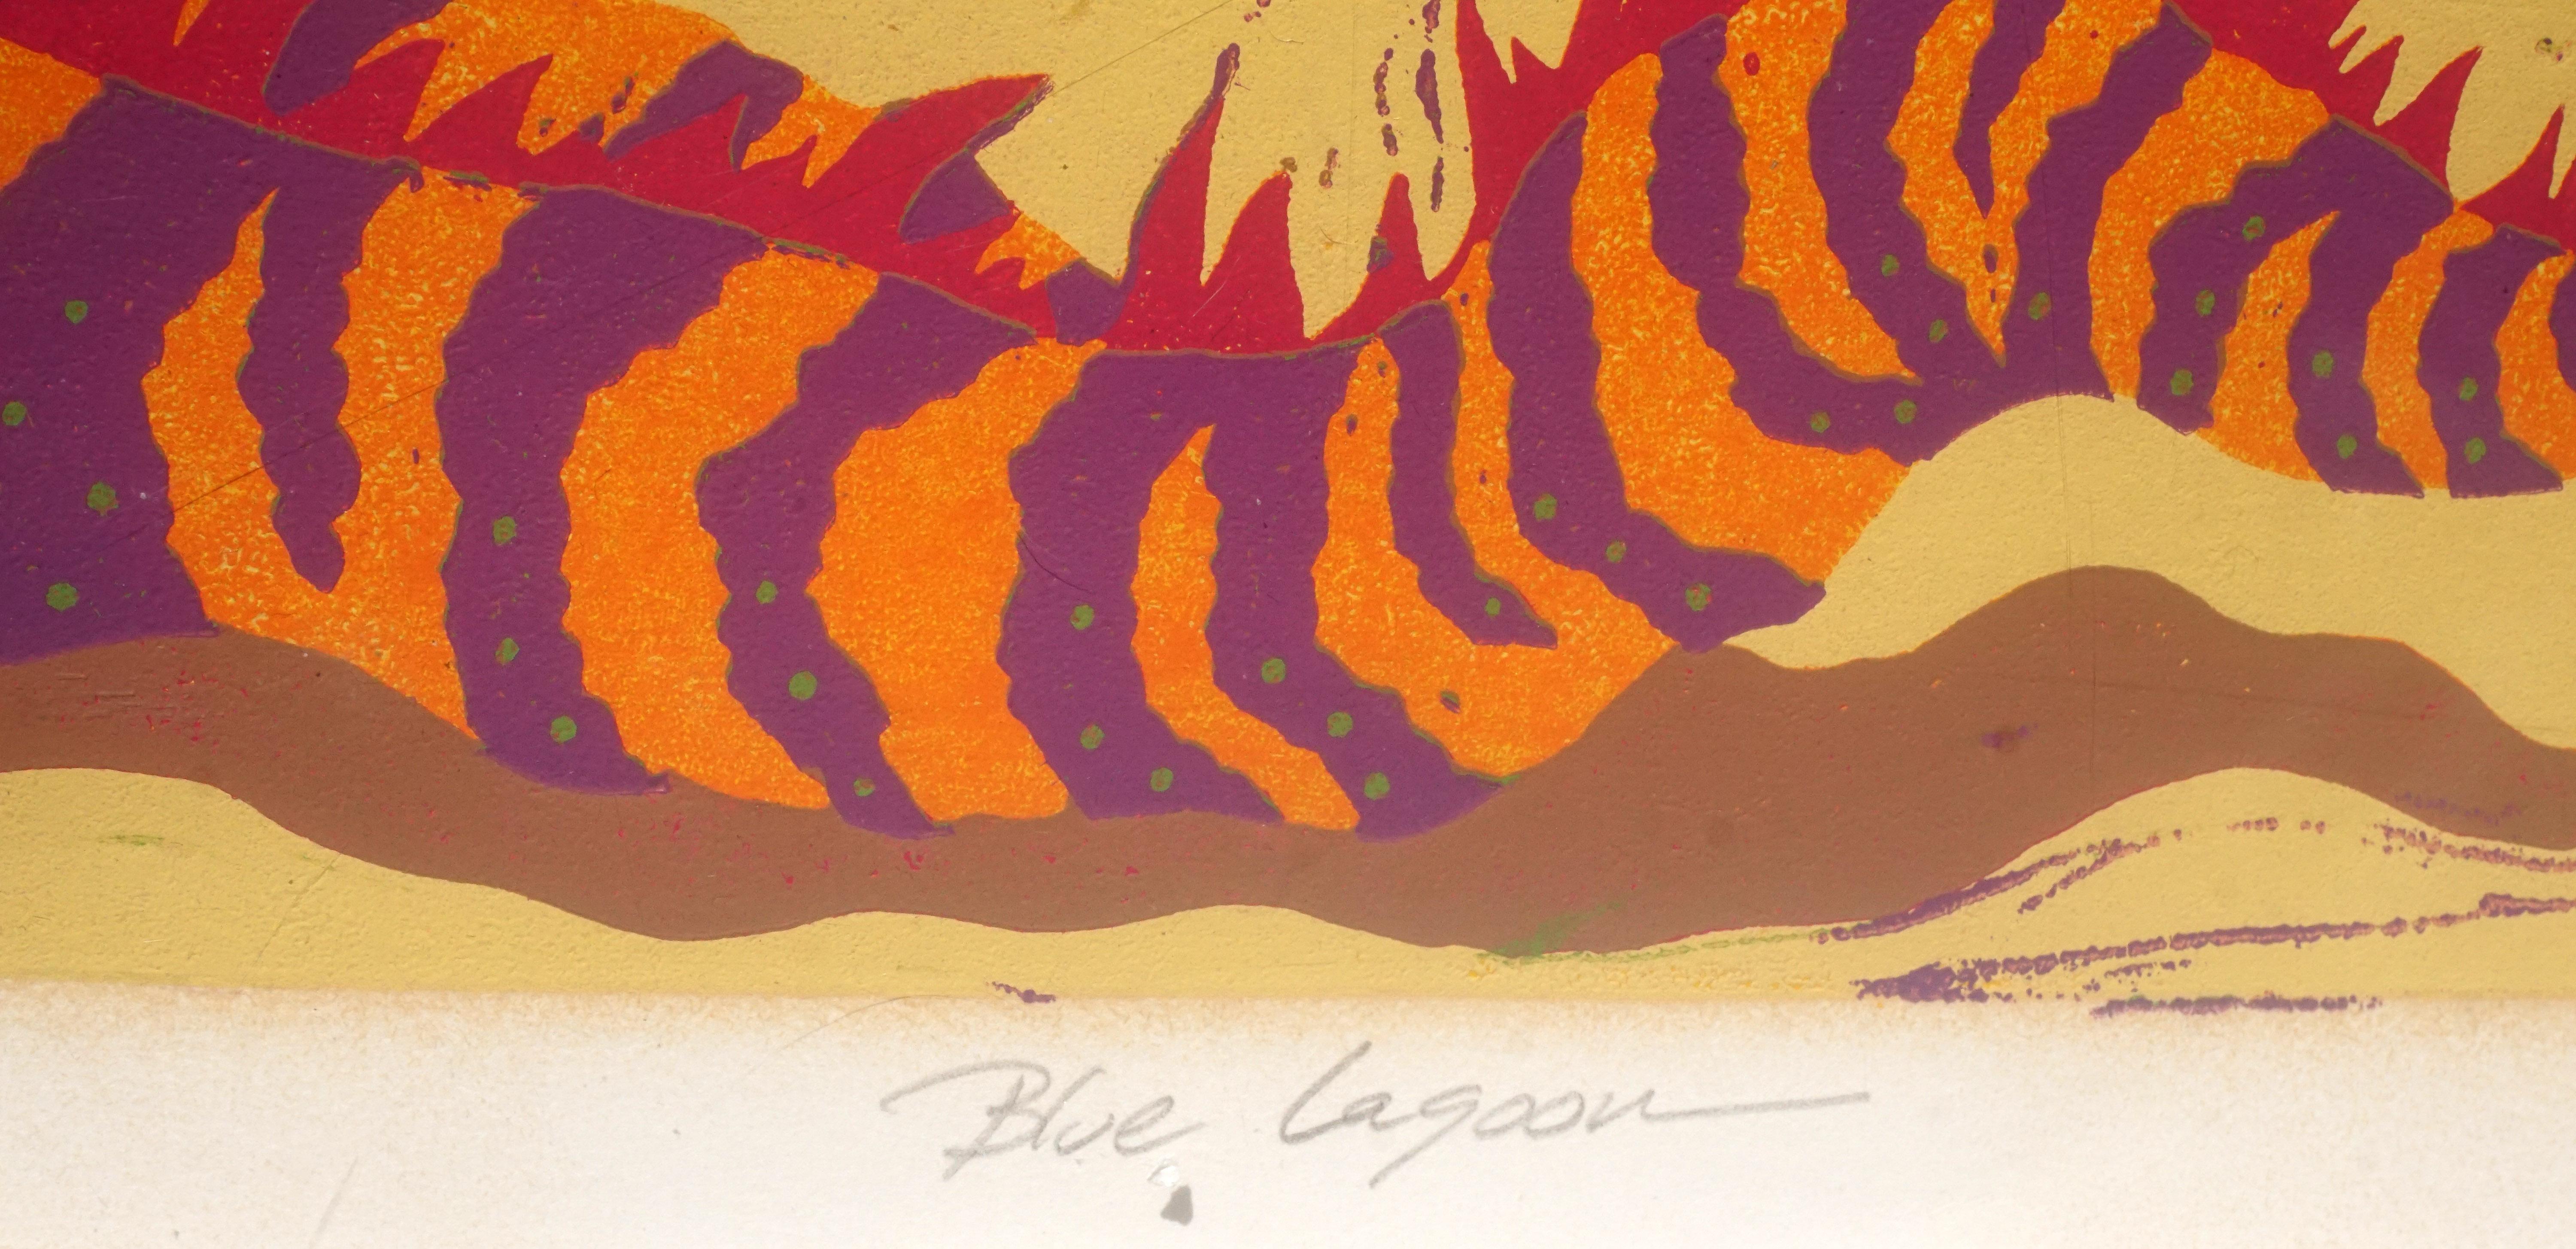 Skurriler und lebhafter Siebdruck in limitierter Auflage auf Papier, der eine lächelnde nackte Figur zeigt, die sich am Strand neben einem fantastischen orange und lila gestreiften Leguan räkelt, während in der Ferne Vulkane ausbrechen und mehrere